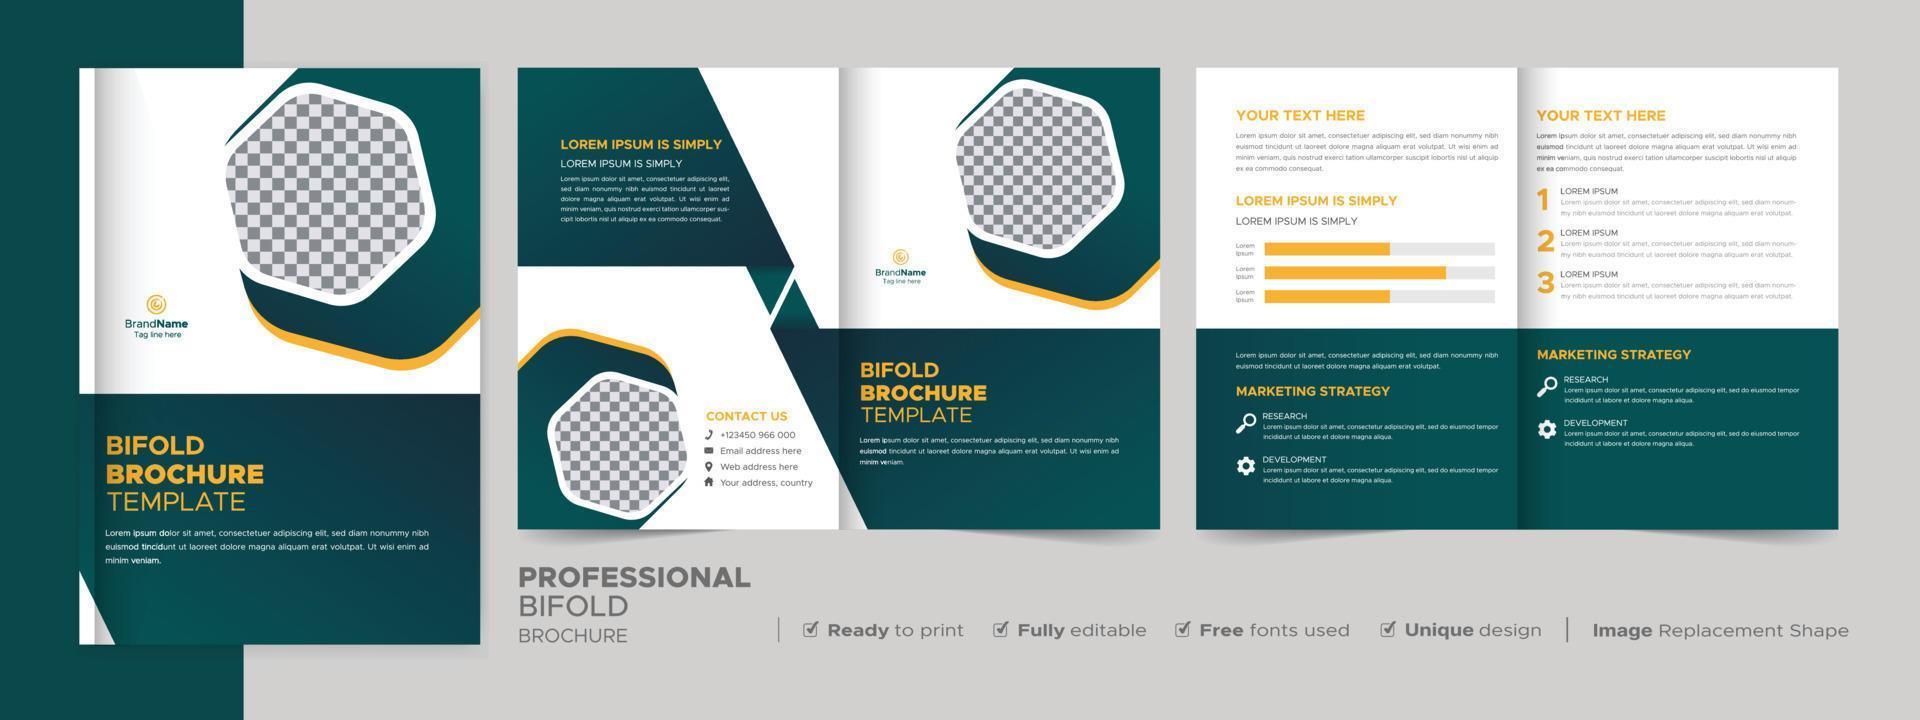 modelo de design de brochura bifold para sua empresa, corporativa, negócios, publicidade, marketing, agência e negócios na Internet. vetor